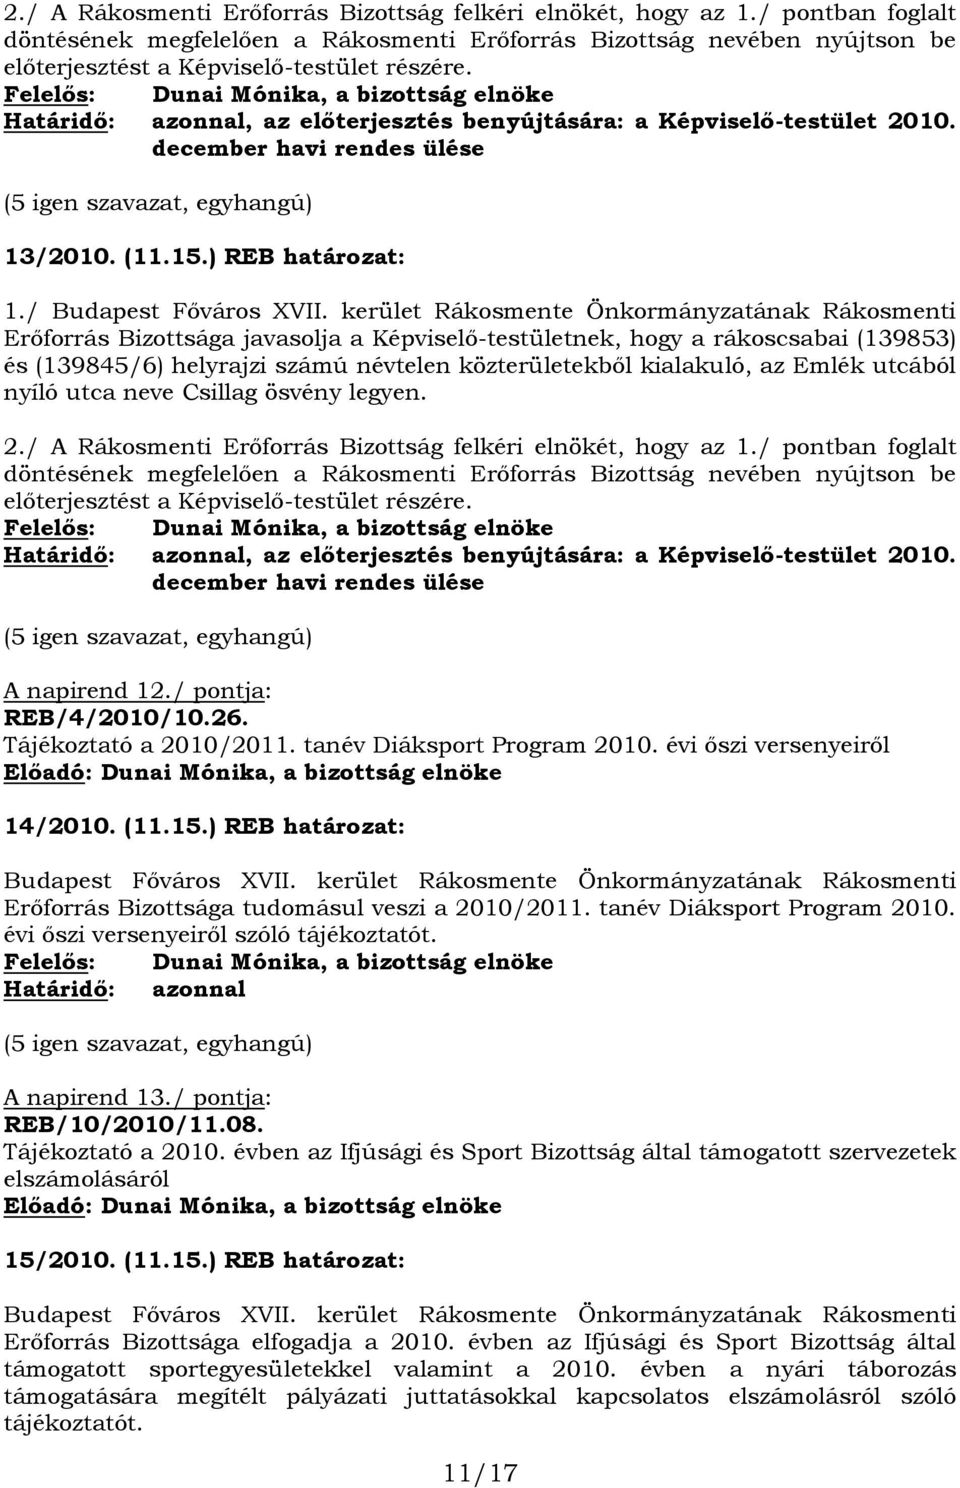 Felelős: Dunai Mónika, a bizottság elnöke Határidő: azonnal, az előterjesztés benyújtására: a Képviselő-testület 2010. december havi rendes ülése (5 igen szavazat, egyhangú) 13/2010. (11.15.